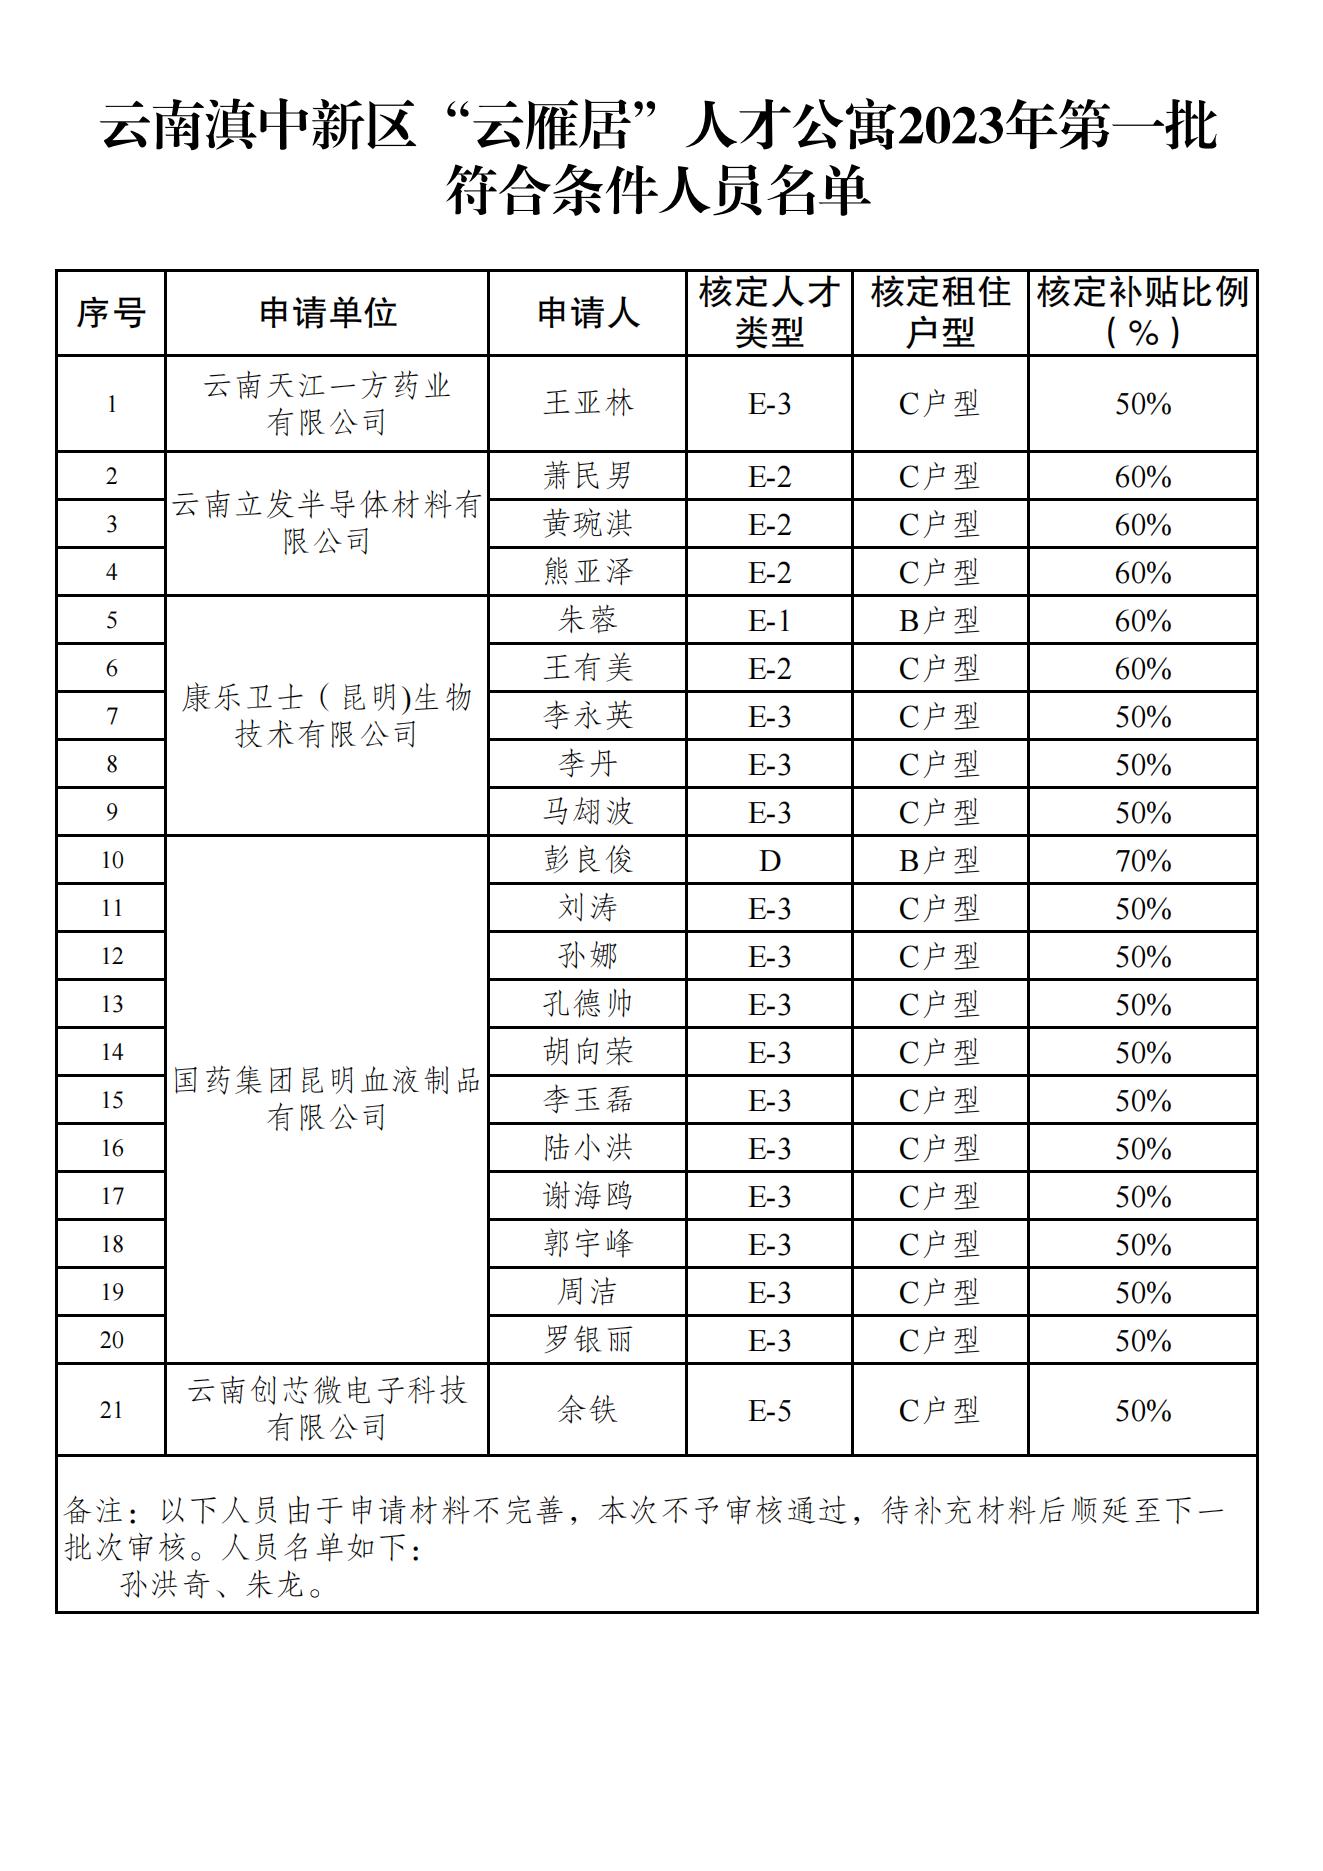 附件：云南滇中新区“云雁居”人才公寓2023年第一批符合条件人员名单_00.jpg